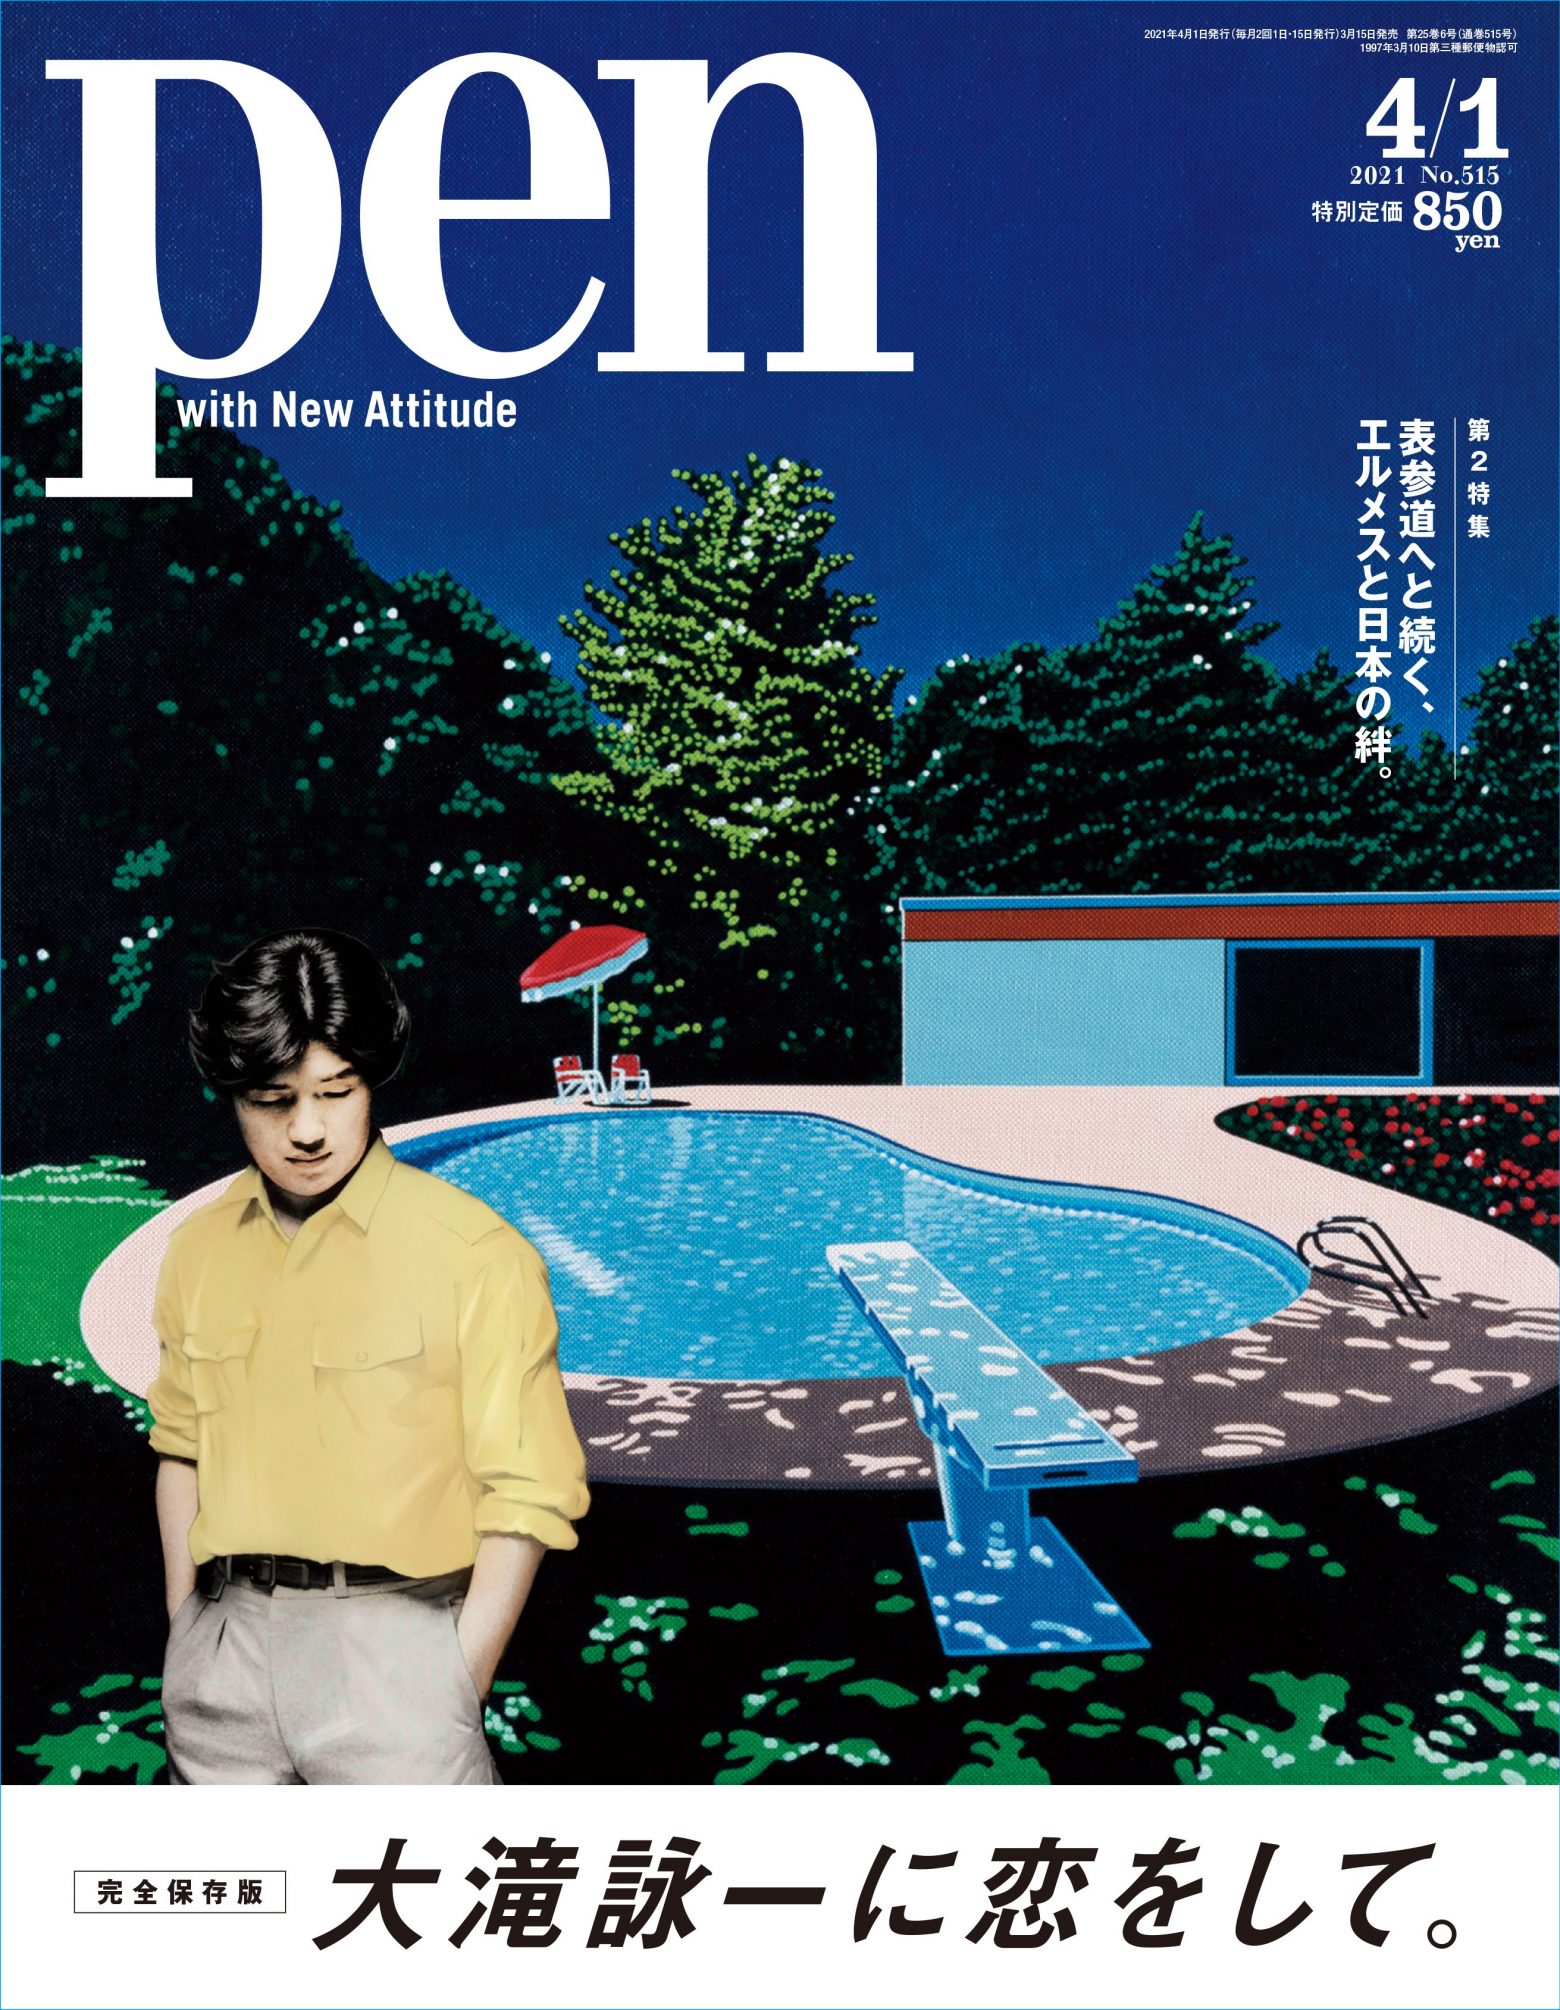 大滝詠一 雑誌 Pen 特集号の表紙公開 永井博氏の色鮮やかなイラストを使用 Musicman